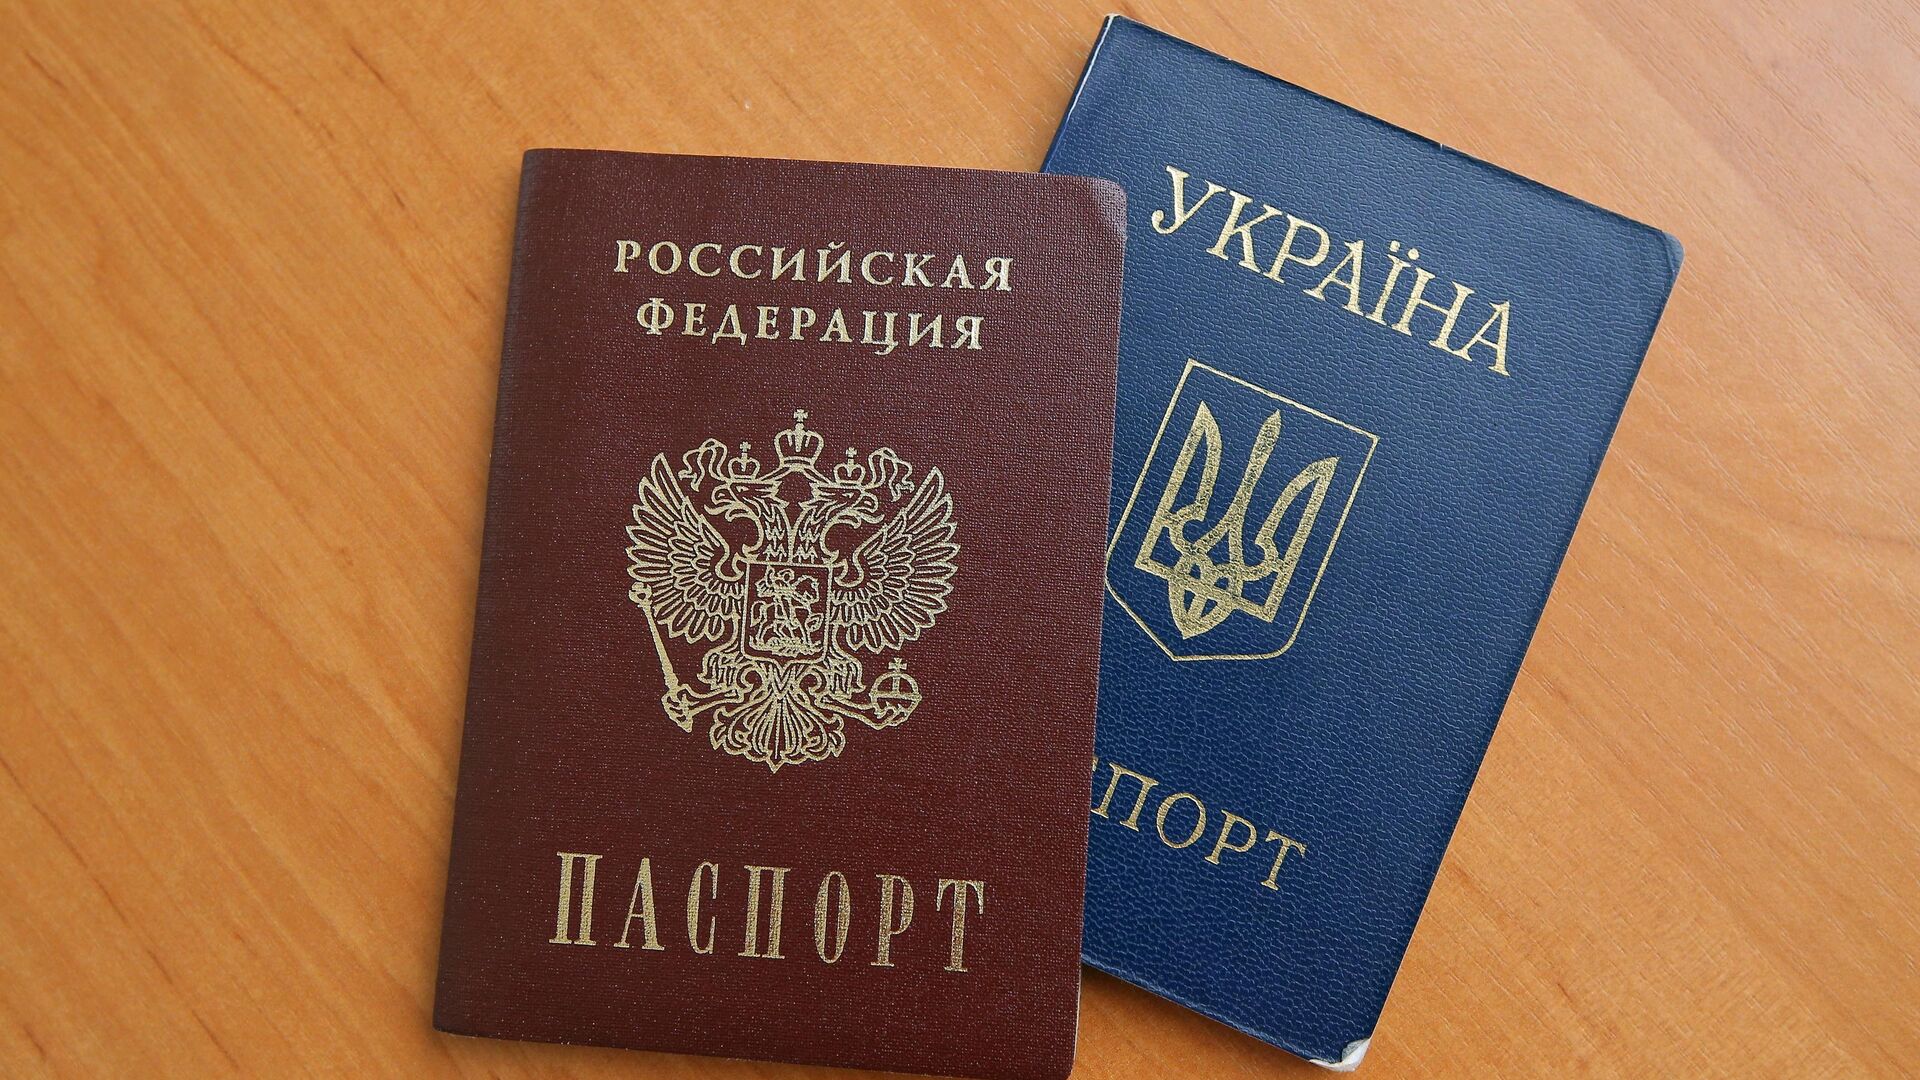 В Госдуме предложили репатриировать украинцев, чувствующих связь с Россией